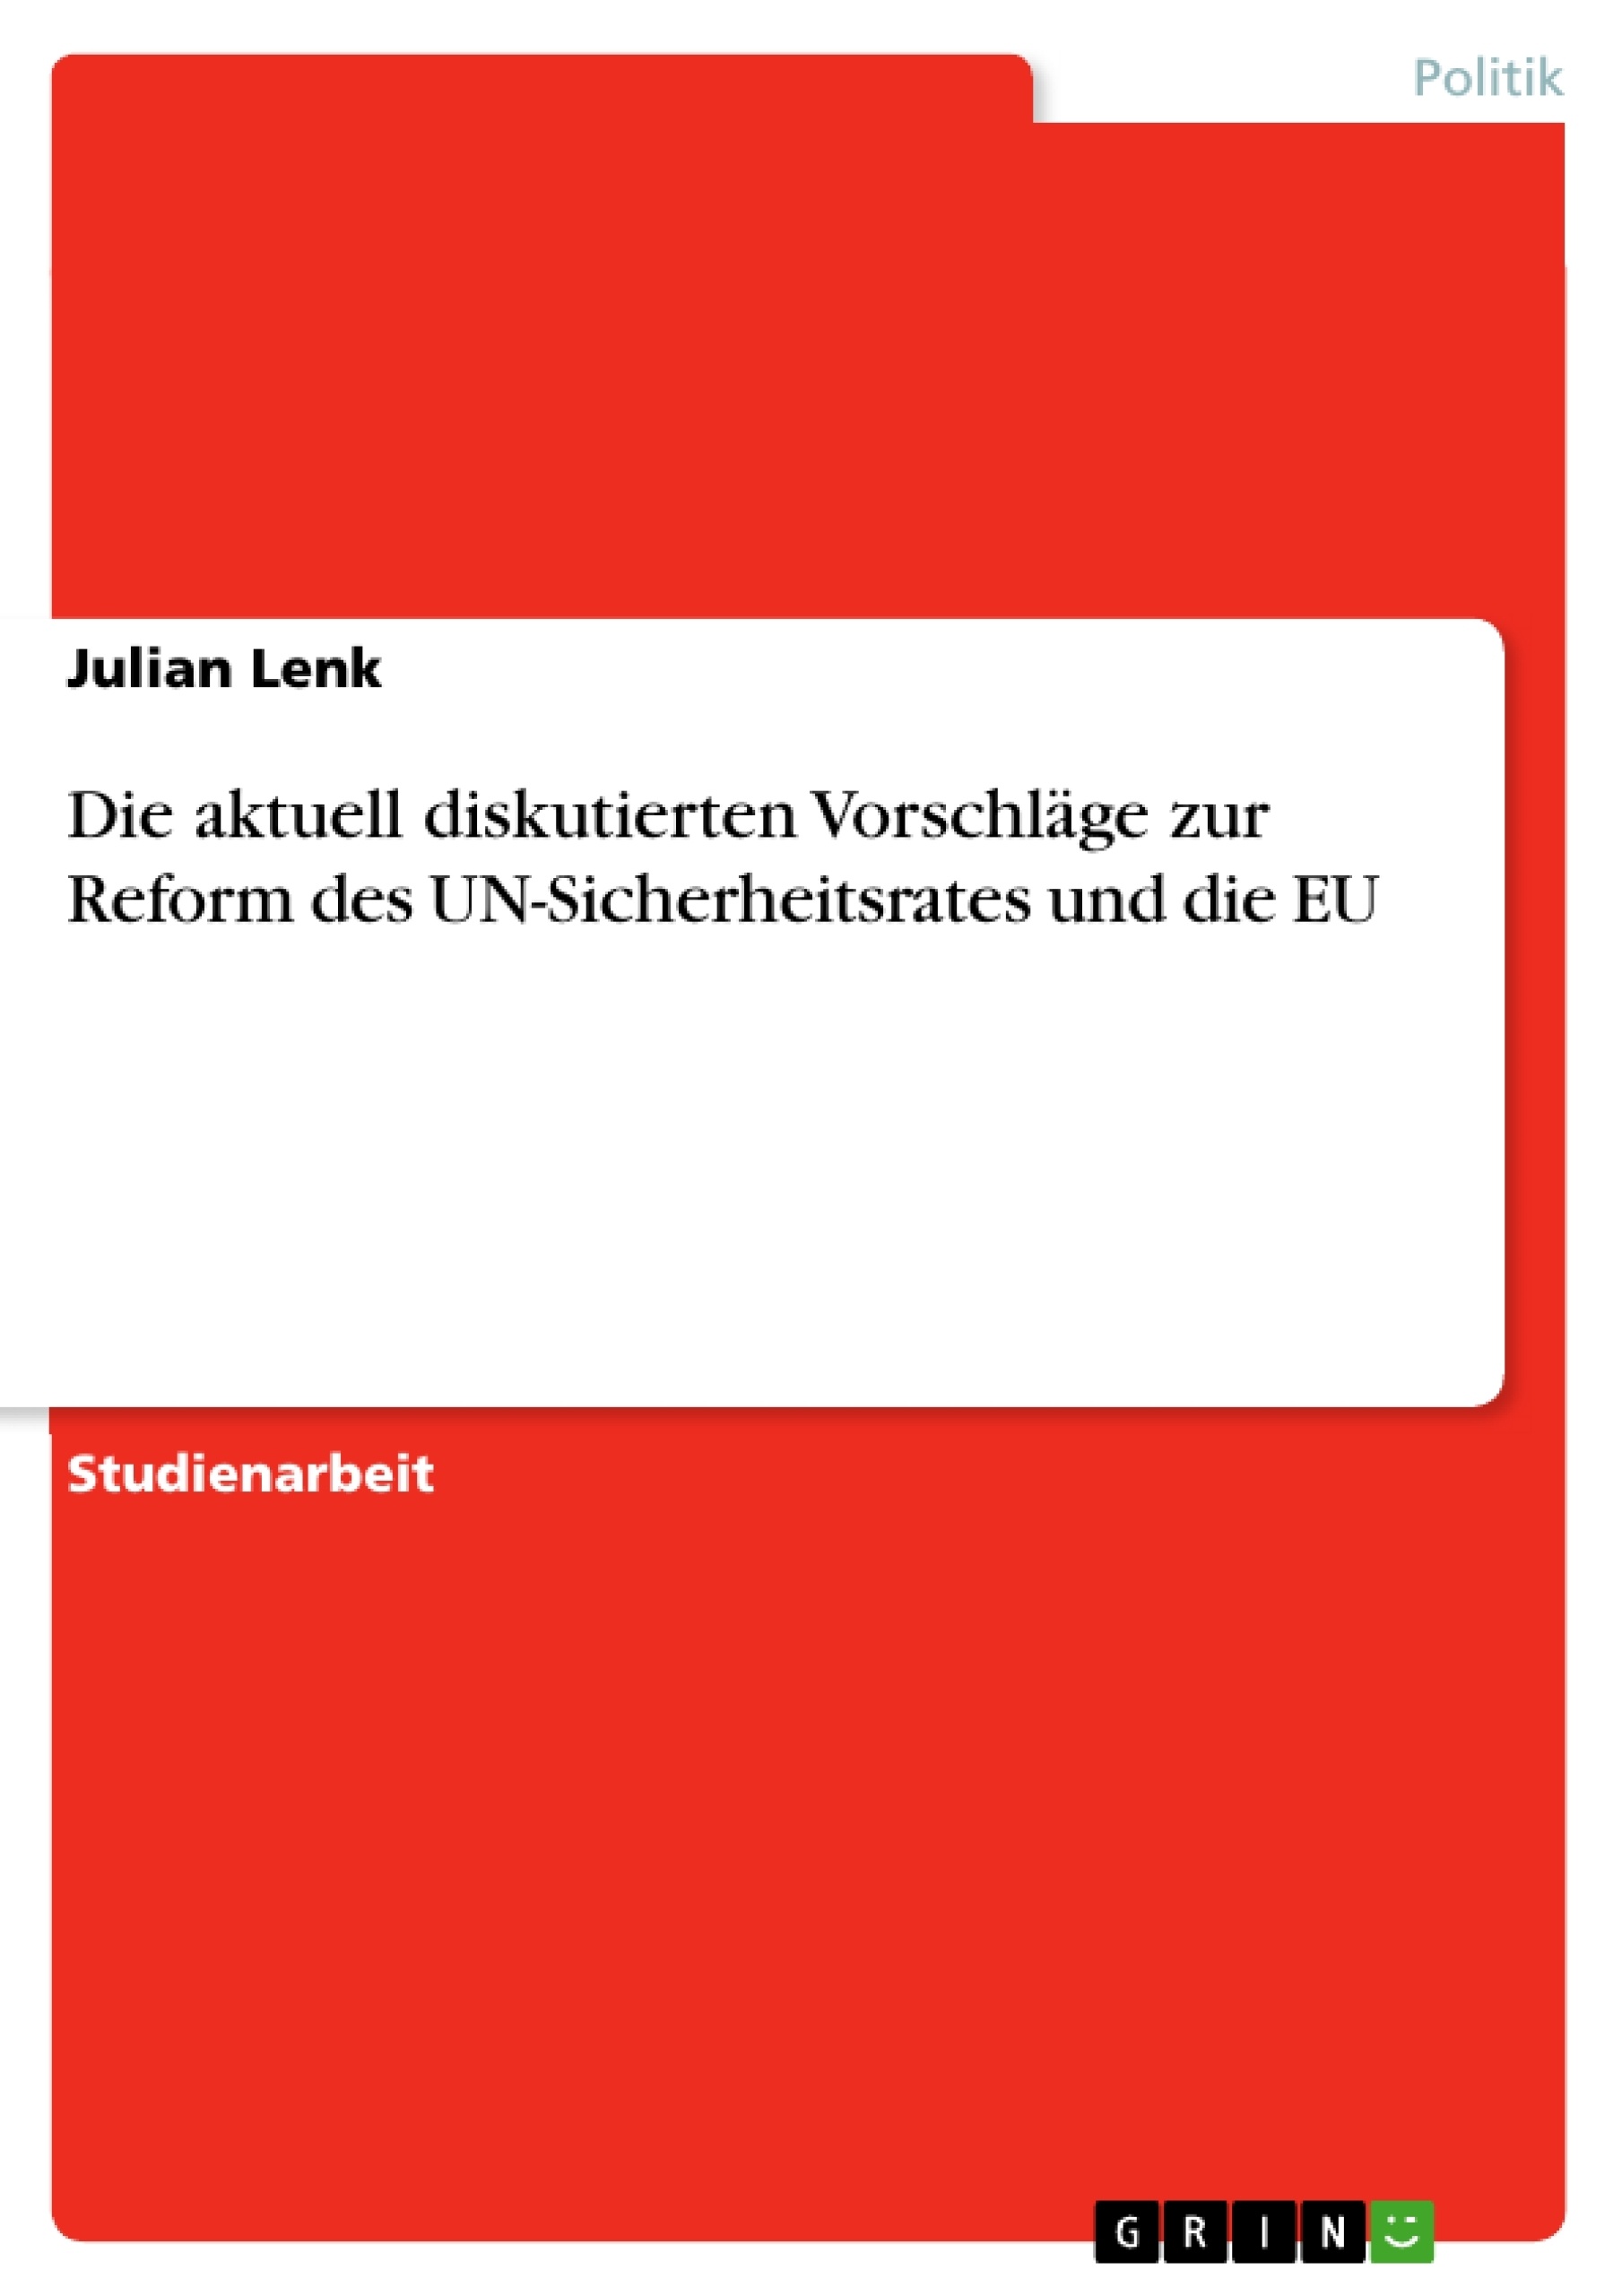 Título: Die aktuell diskutierten Vorschläge zur Reform des UN-Sicherheitsrates und die EU